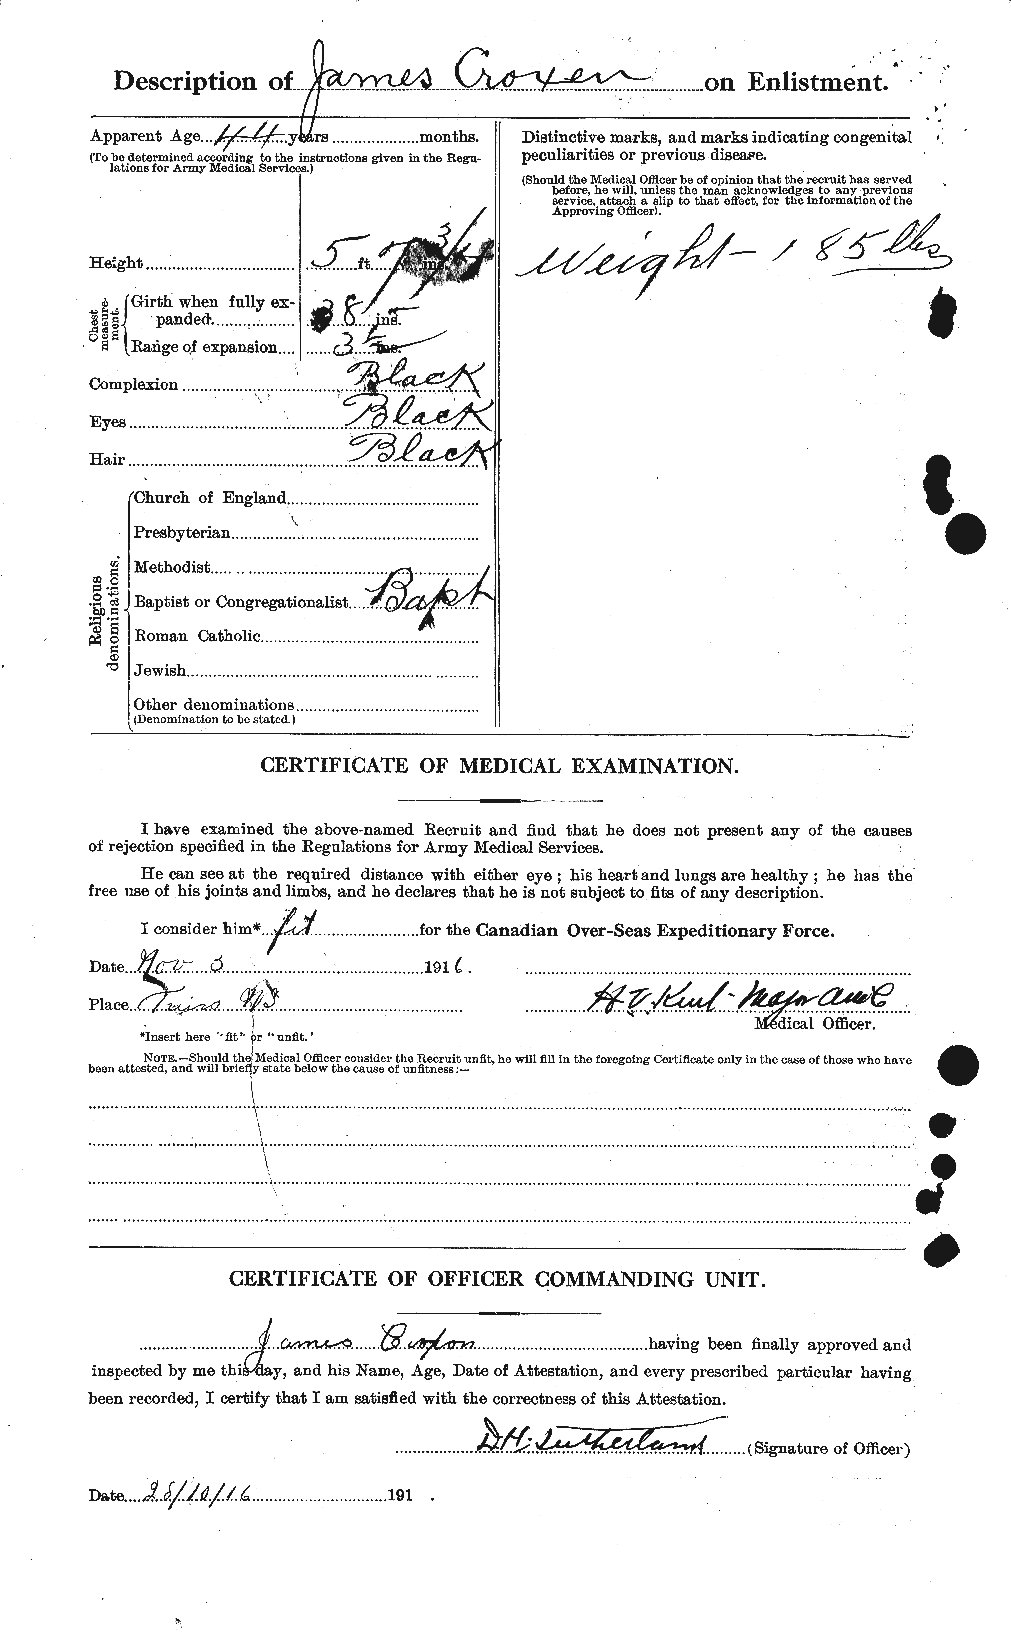 Dossiers du Personnel de la Première Guerre mondiale - CEC 066726b